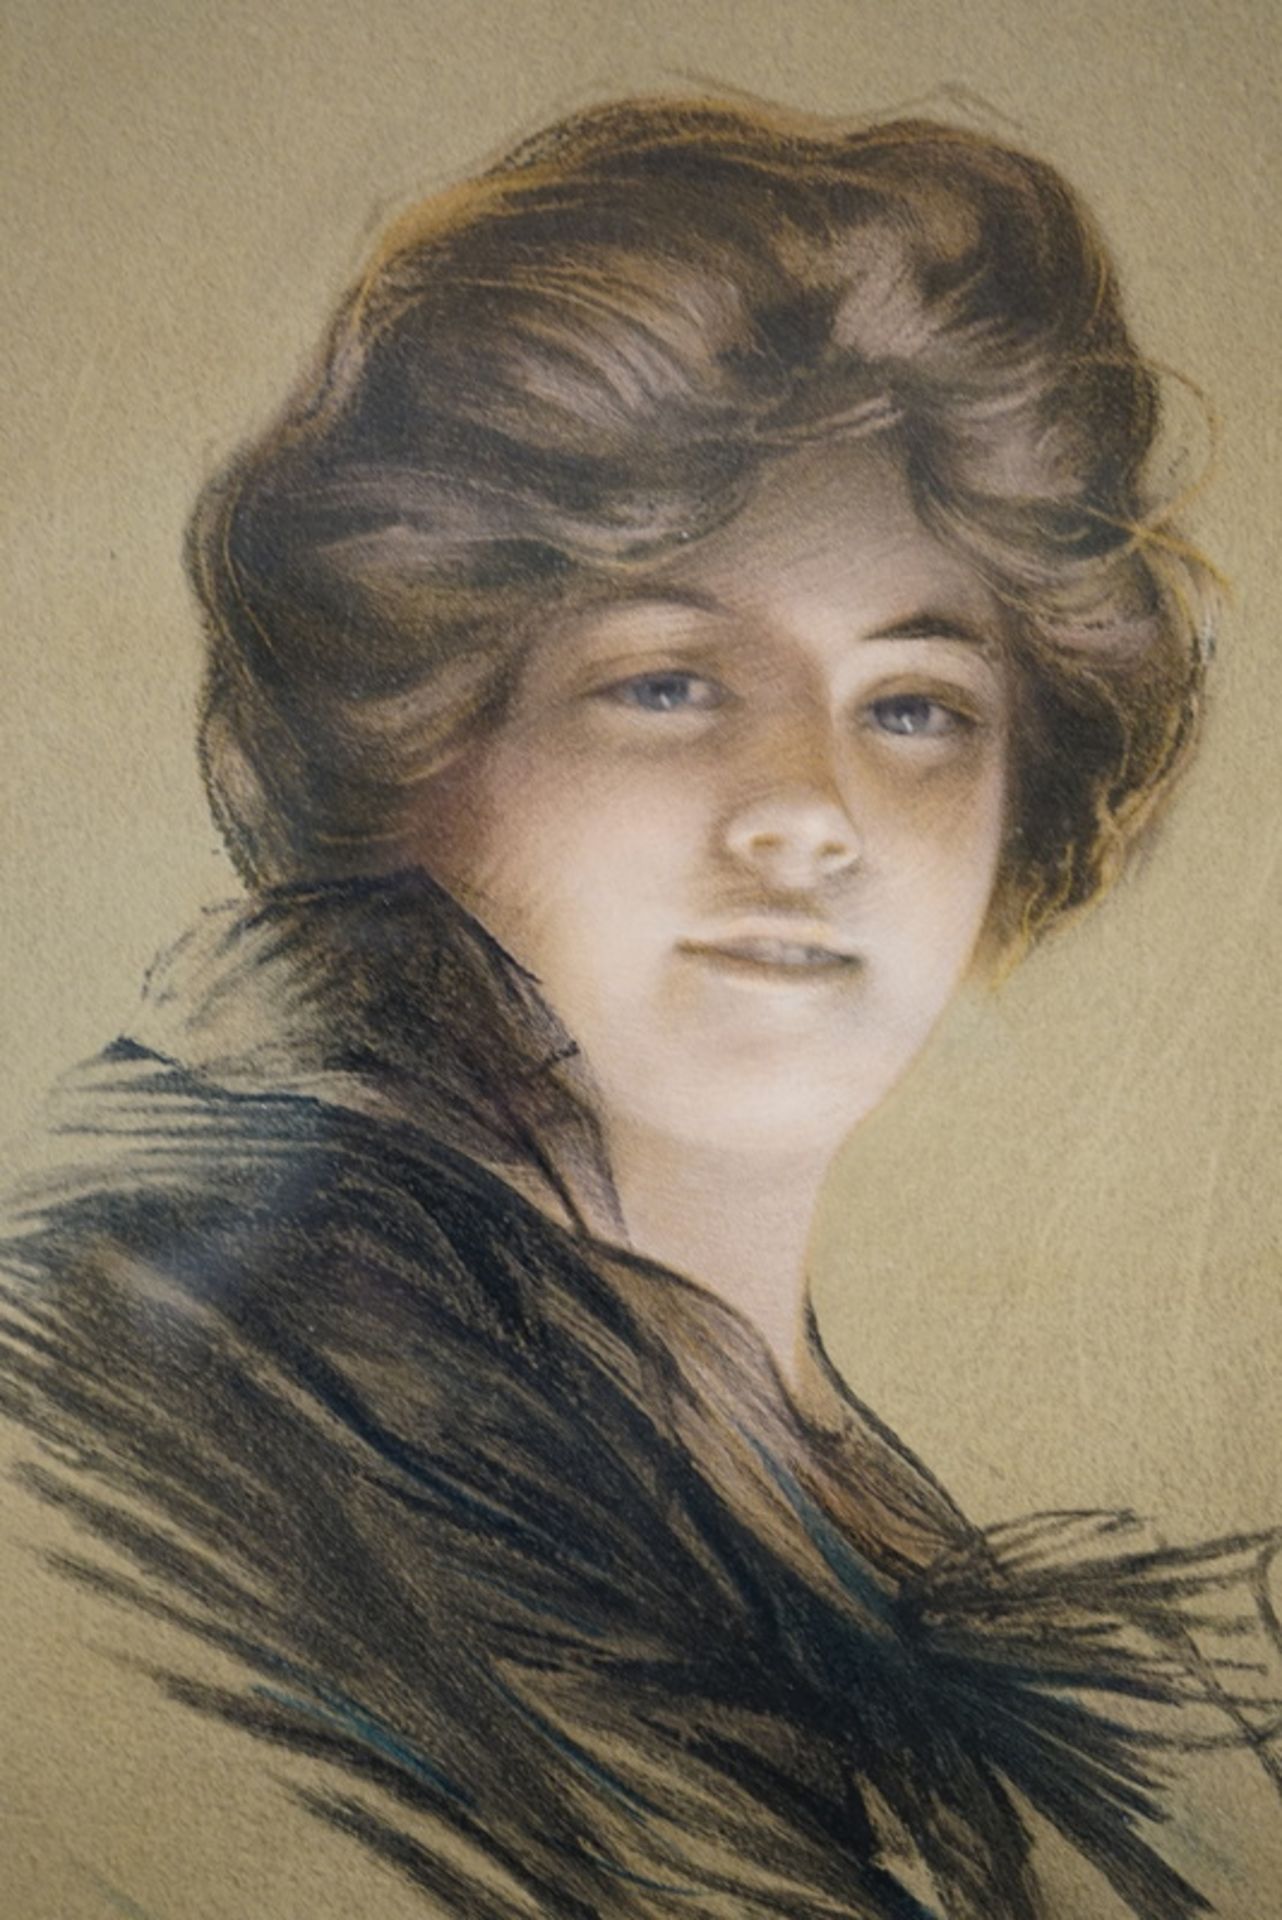 Philip Boileau: Philip Boileau, Bildnis einer jungen Dame, Lithografie, 1905/07